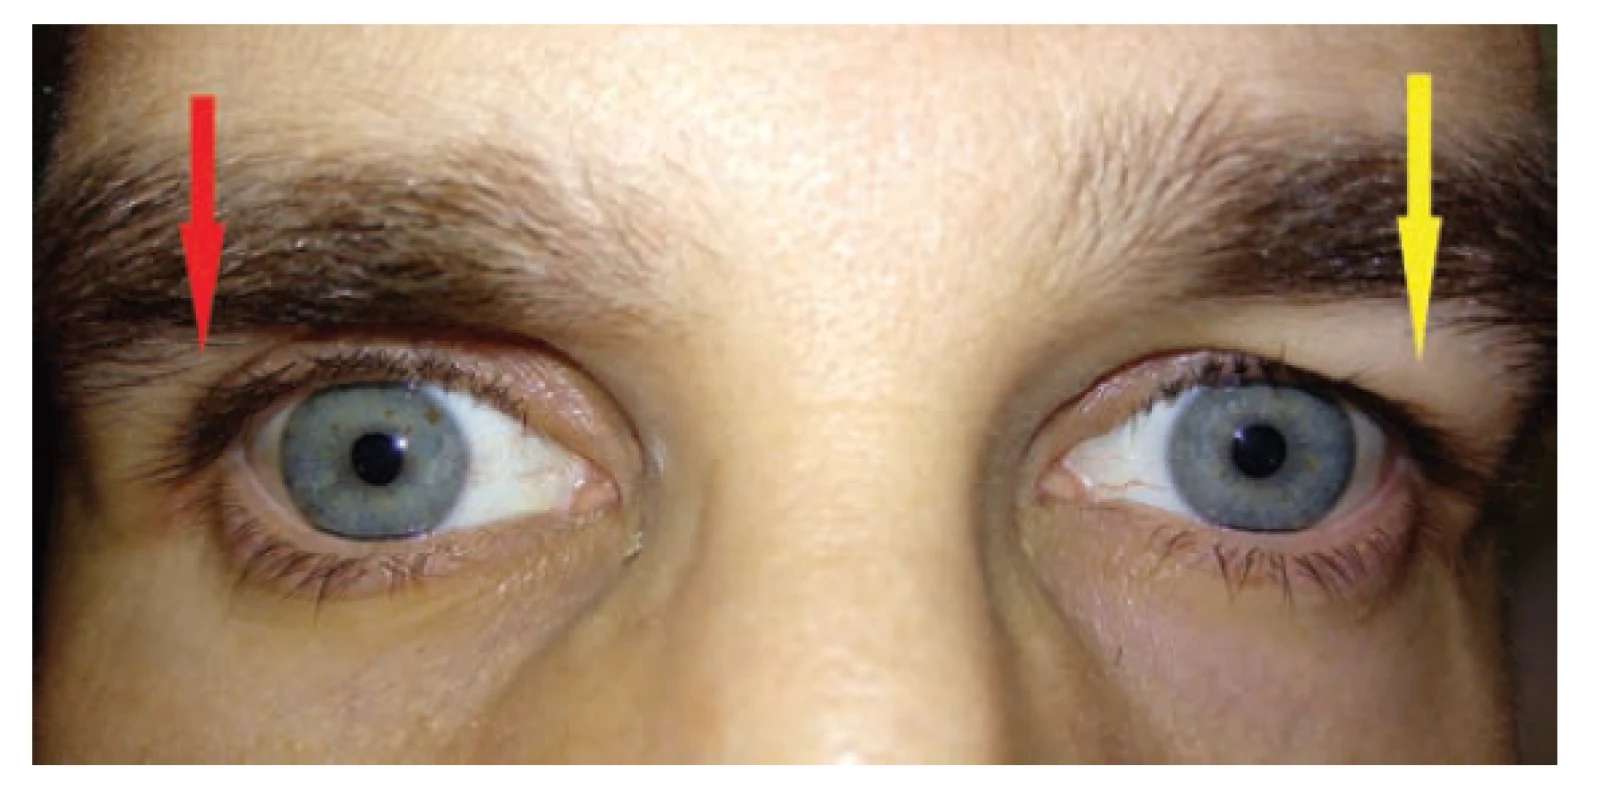 Blefarochalasis levého oka. Na pravém oku lze tušit
místo blefarochalasy hlubokou orbitopalpebrální rýhu